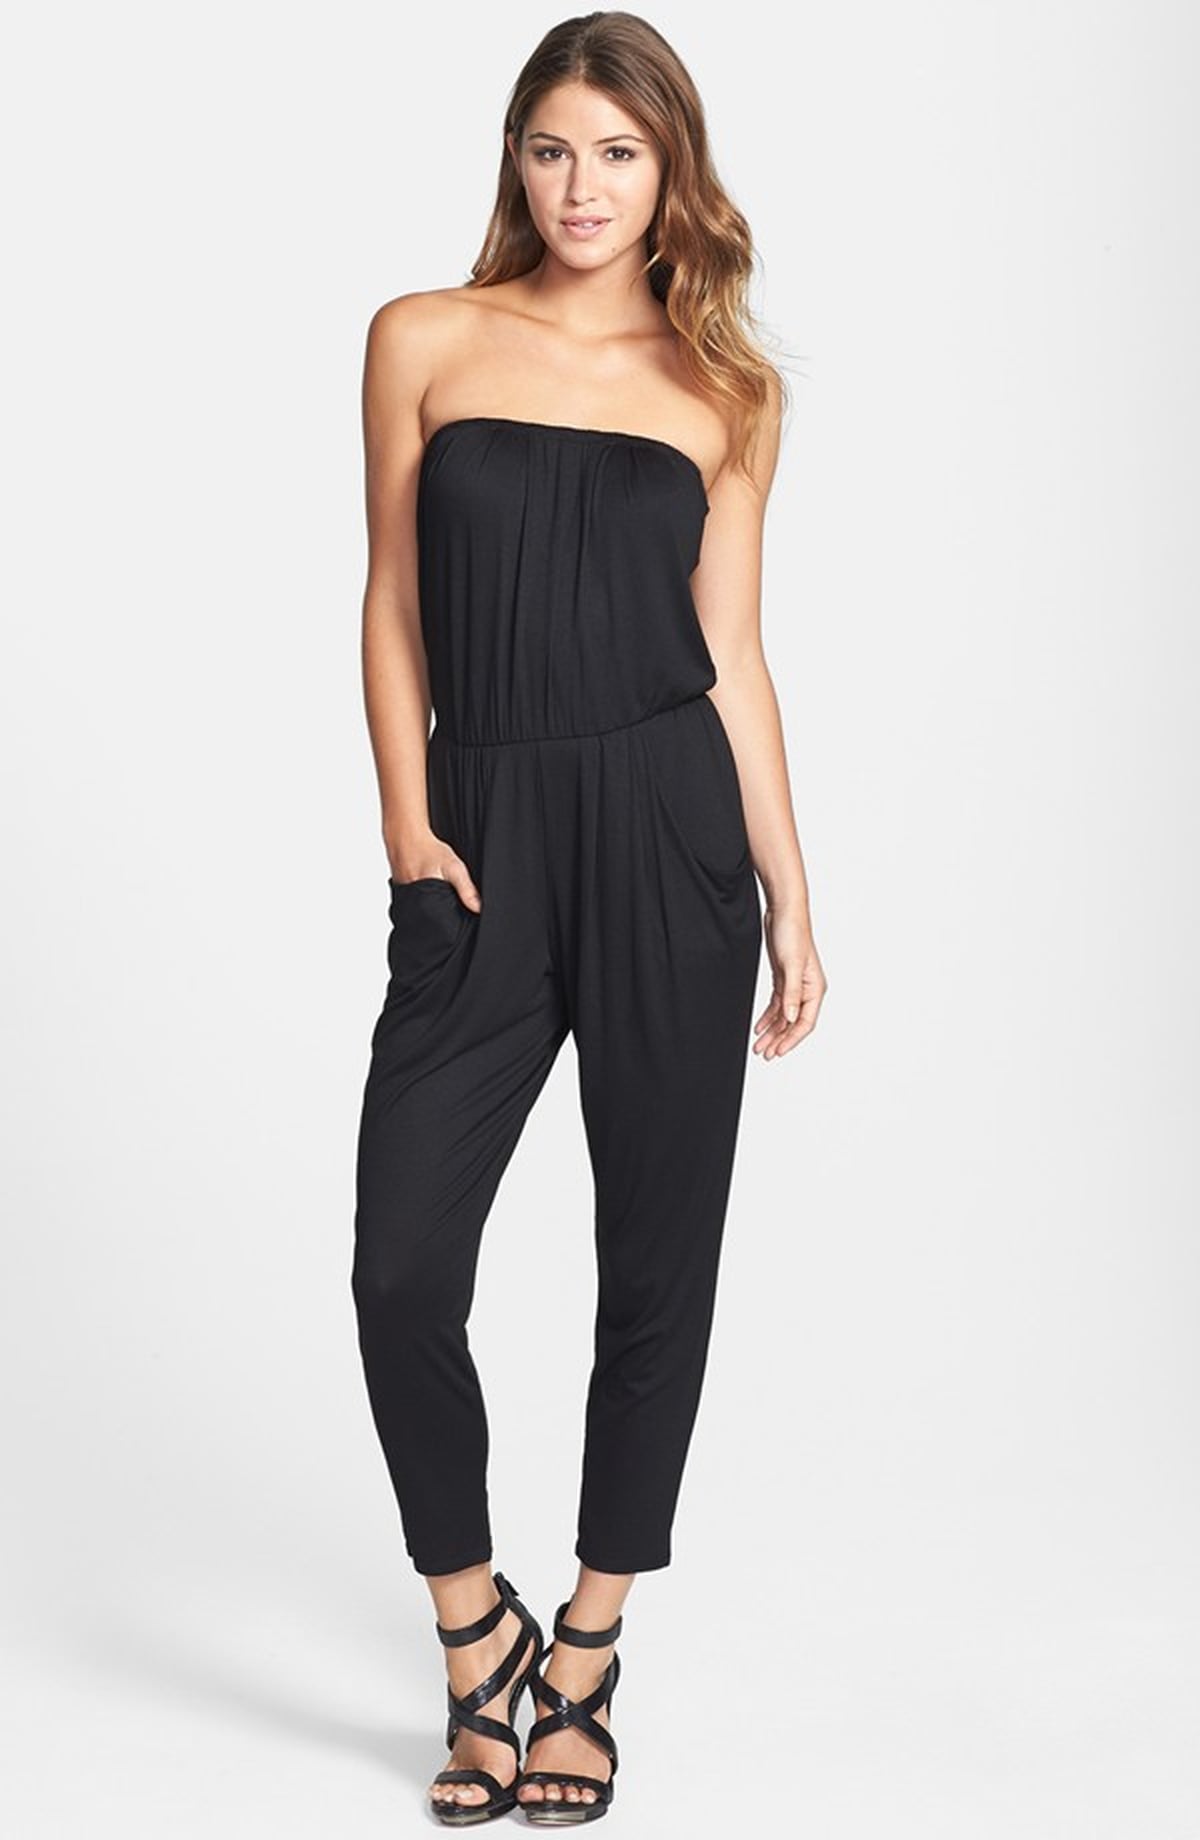 Caitlyn Jenner Wearing Black Jumpsuit | POPSUGAR Fashion